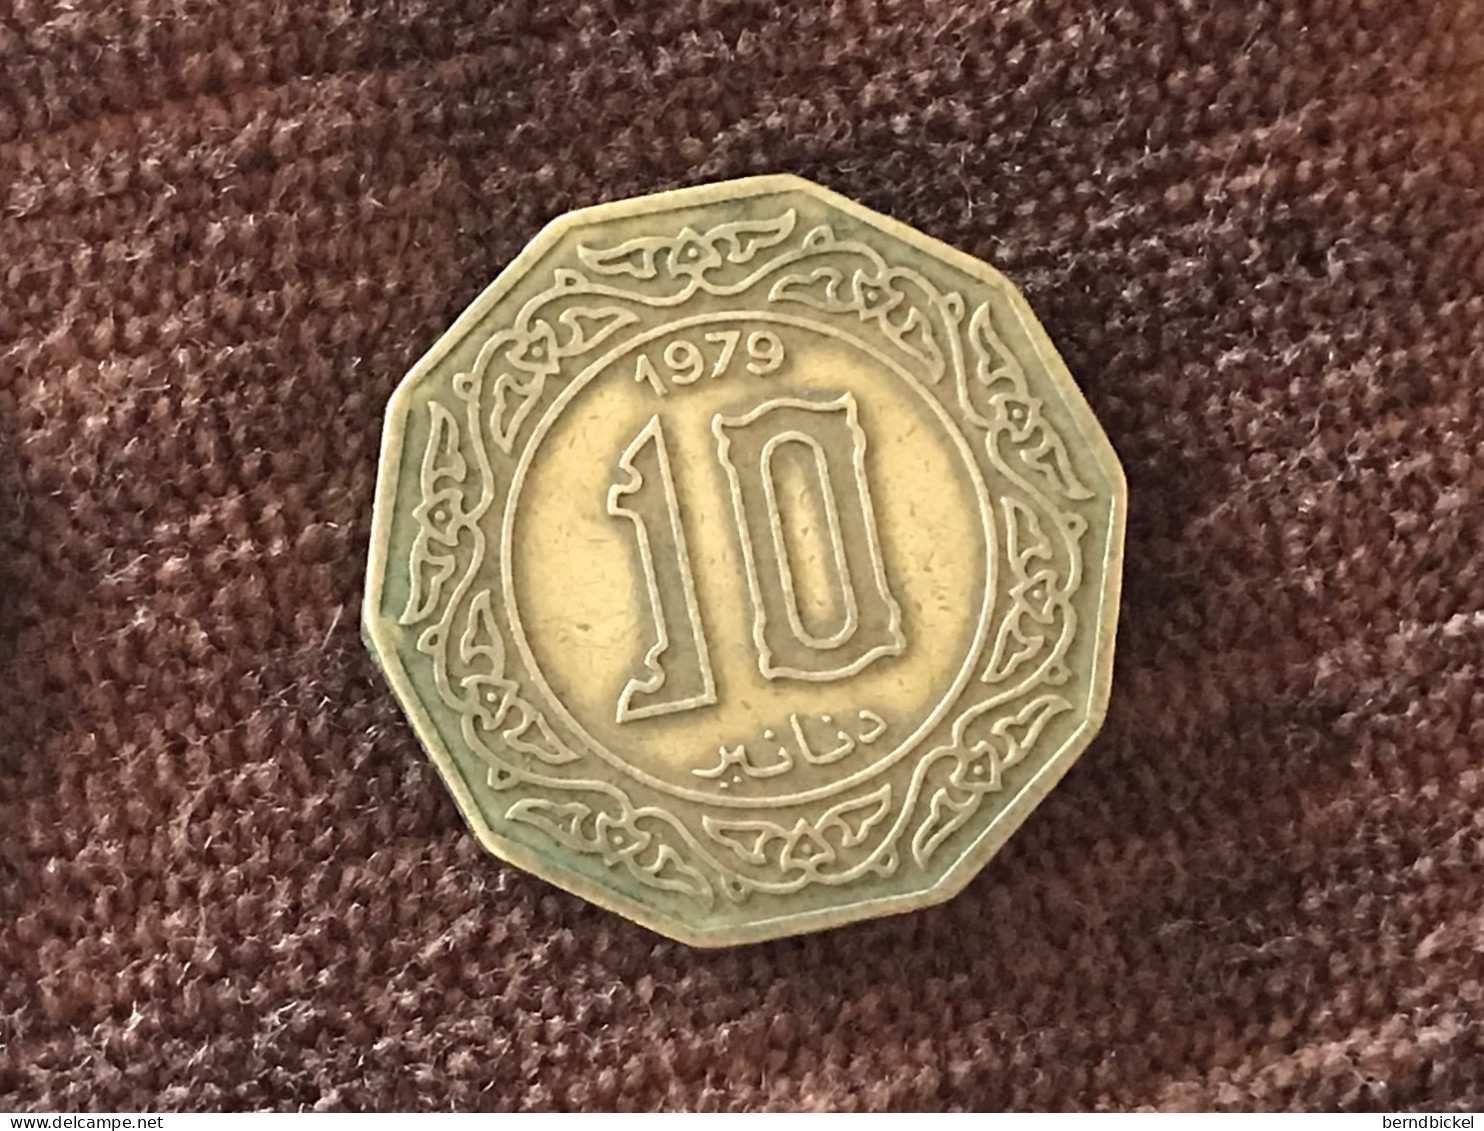 Münze Münzen Umlaufmünze Algerien 10 Dinar 1979 - Algérie